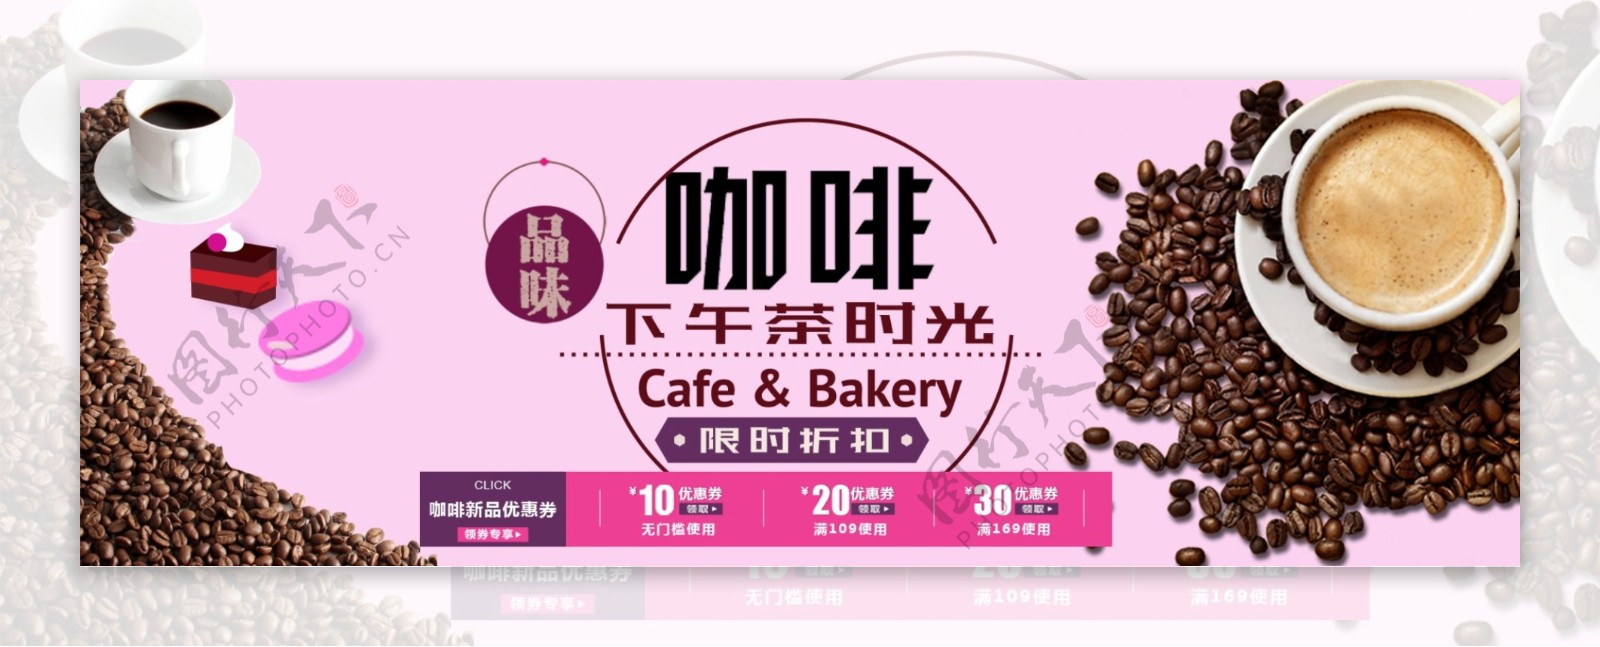 粉米色2017咖啡节淘宝天猫电商海报模板